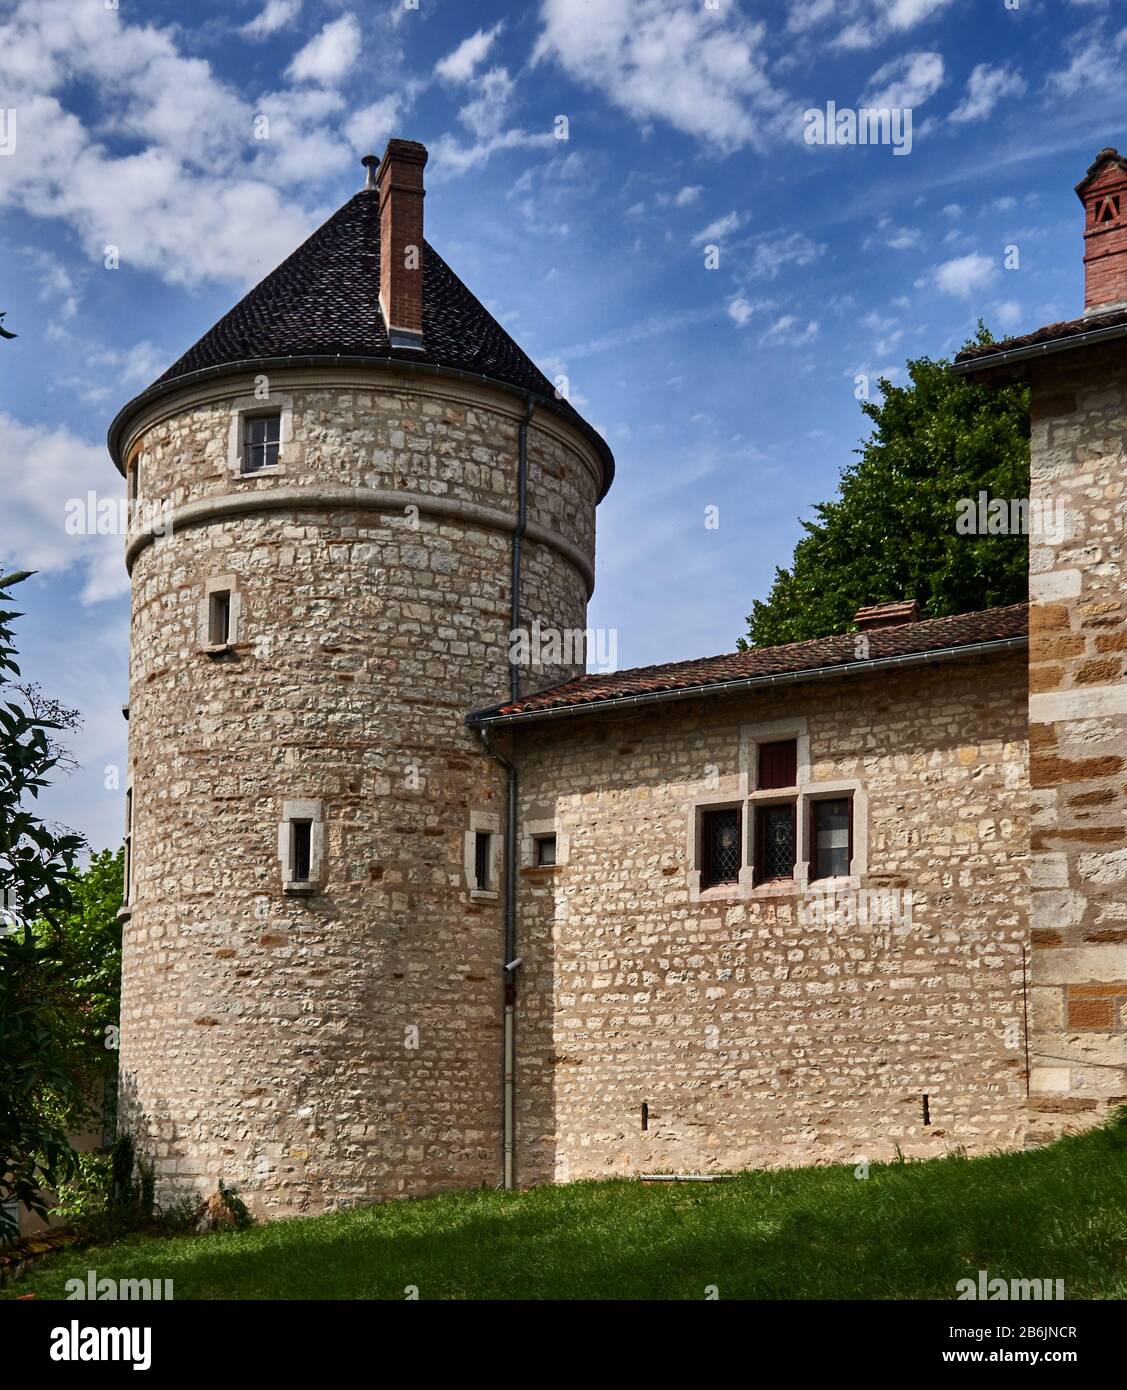 France, département de l'Ain, Auvergne - Rhône - Alpes région. Une tour d'angle du château fortifié dans le paisible village de Treffort Banque D'Images